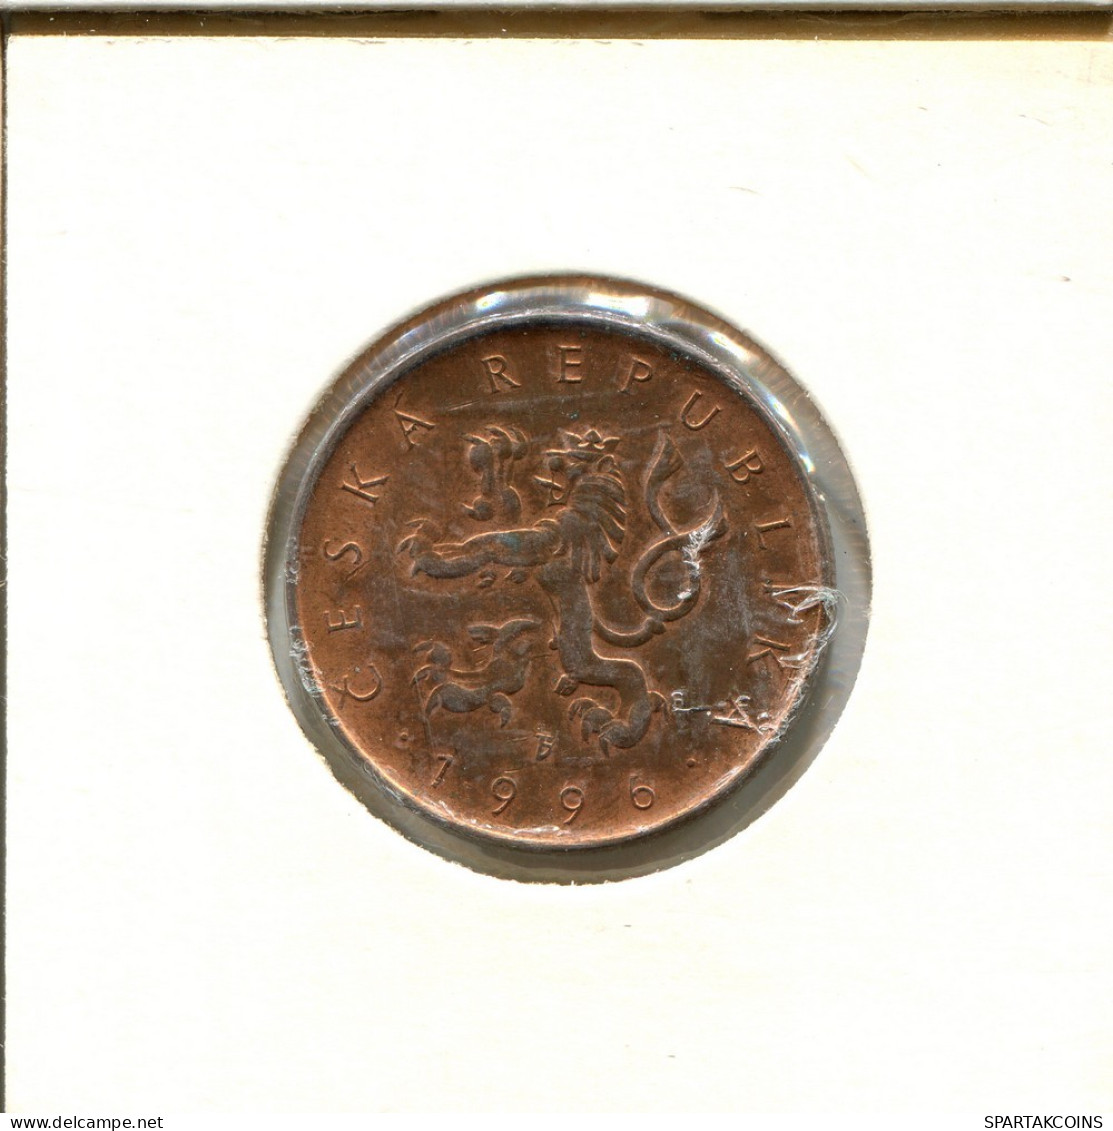 10 KORUN 1996 CZECH REPUBLIC Coin #AS929.U.A - Czech Republic